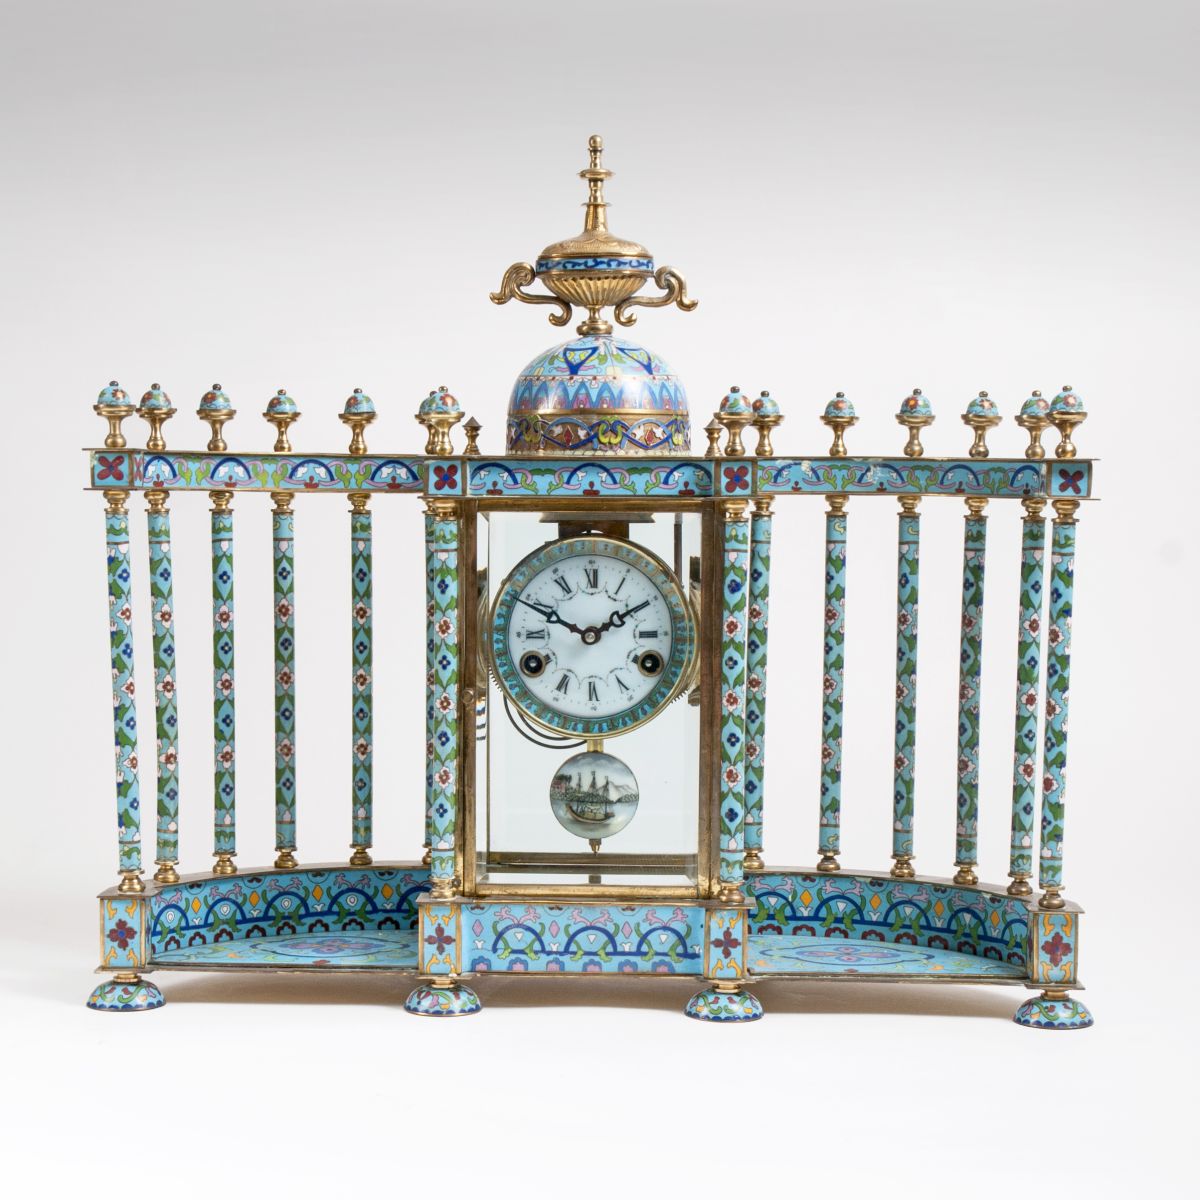 A Cloisonné mantel clock with portico